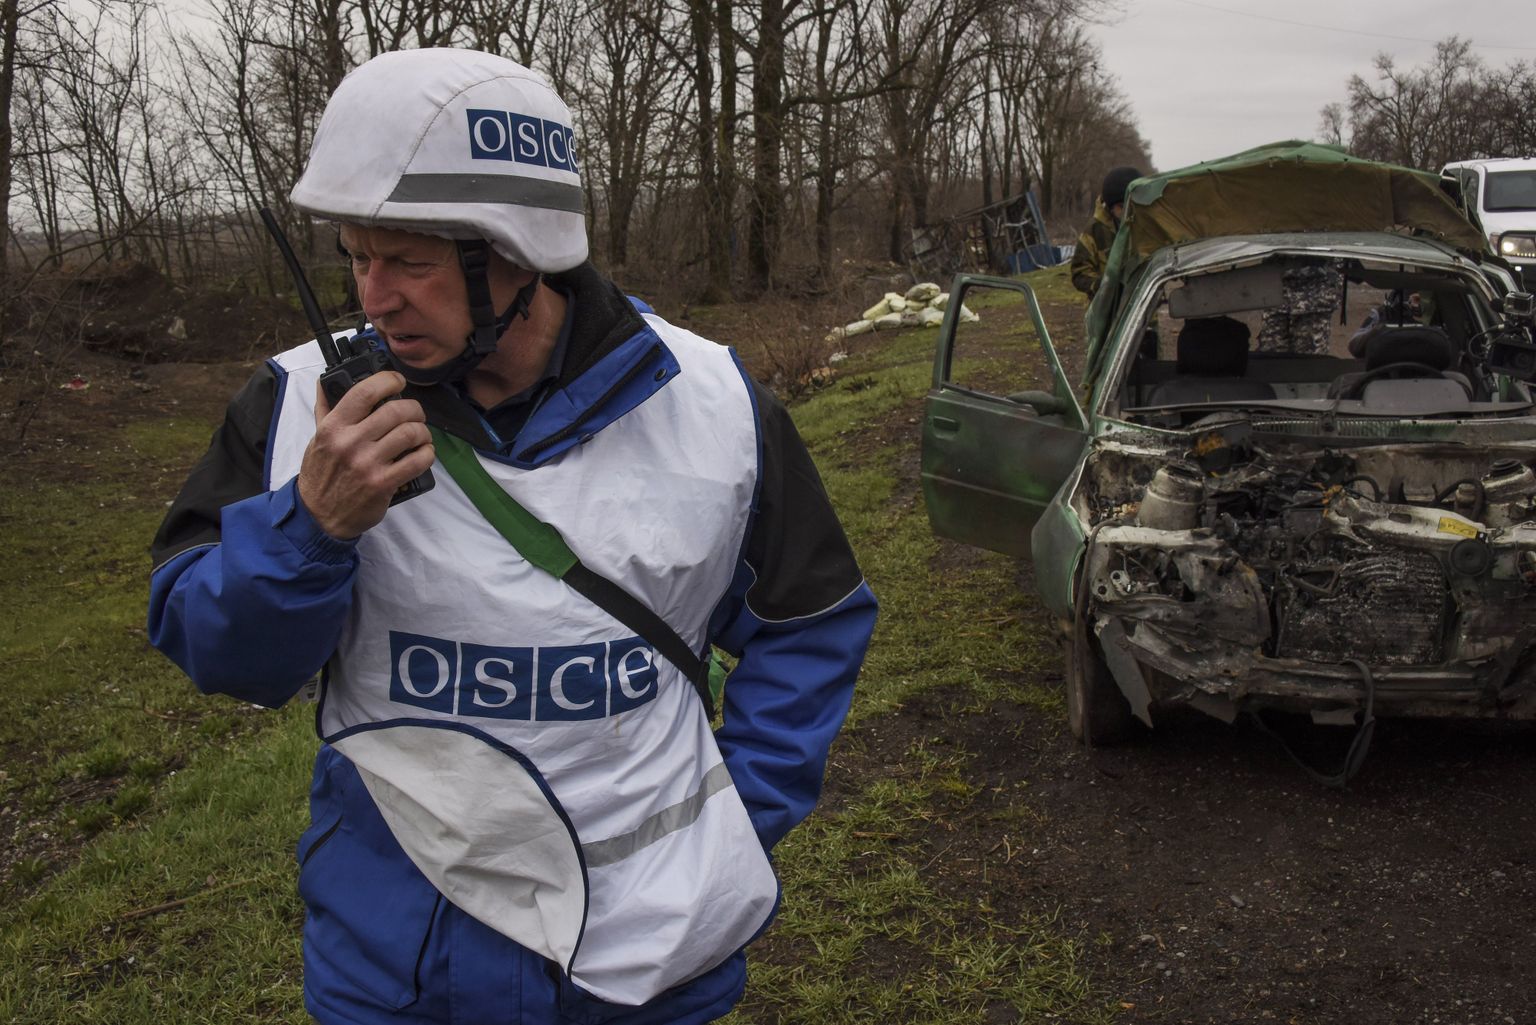 OSCE vaatleja Ukrainas